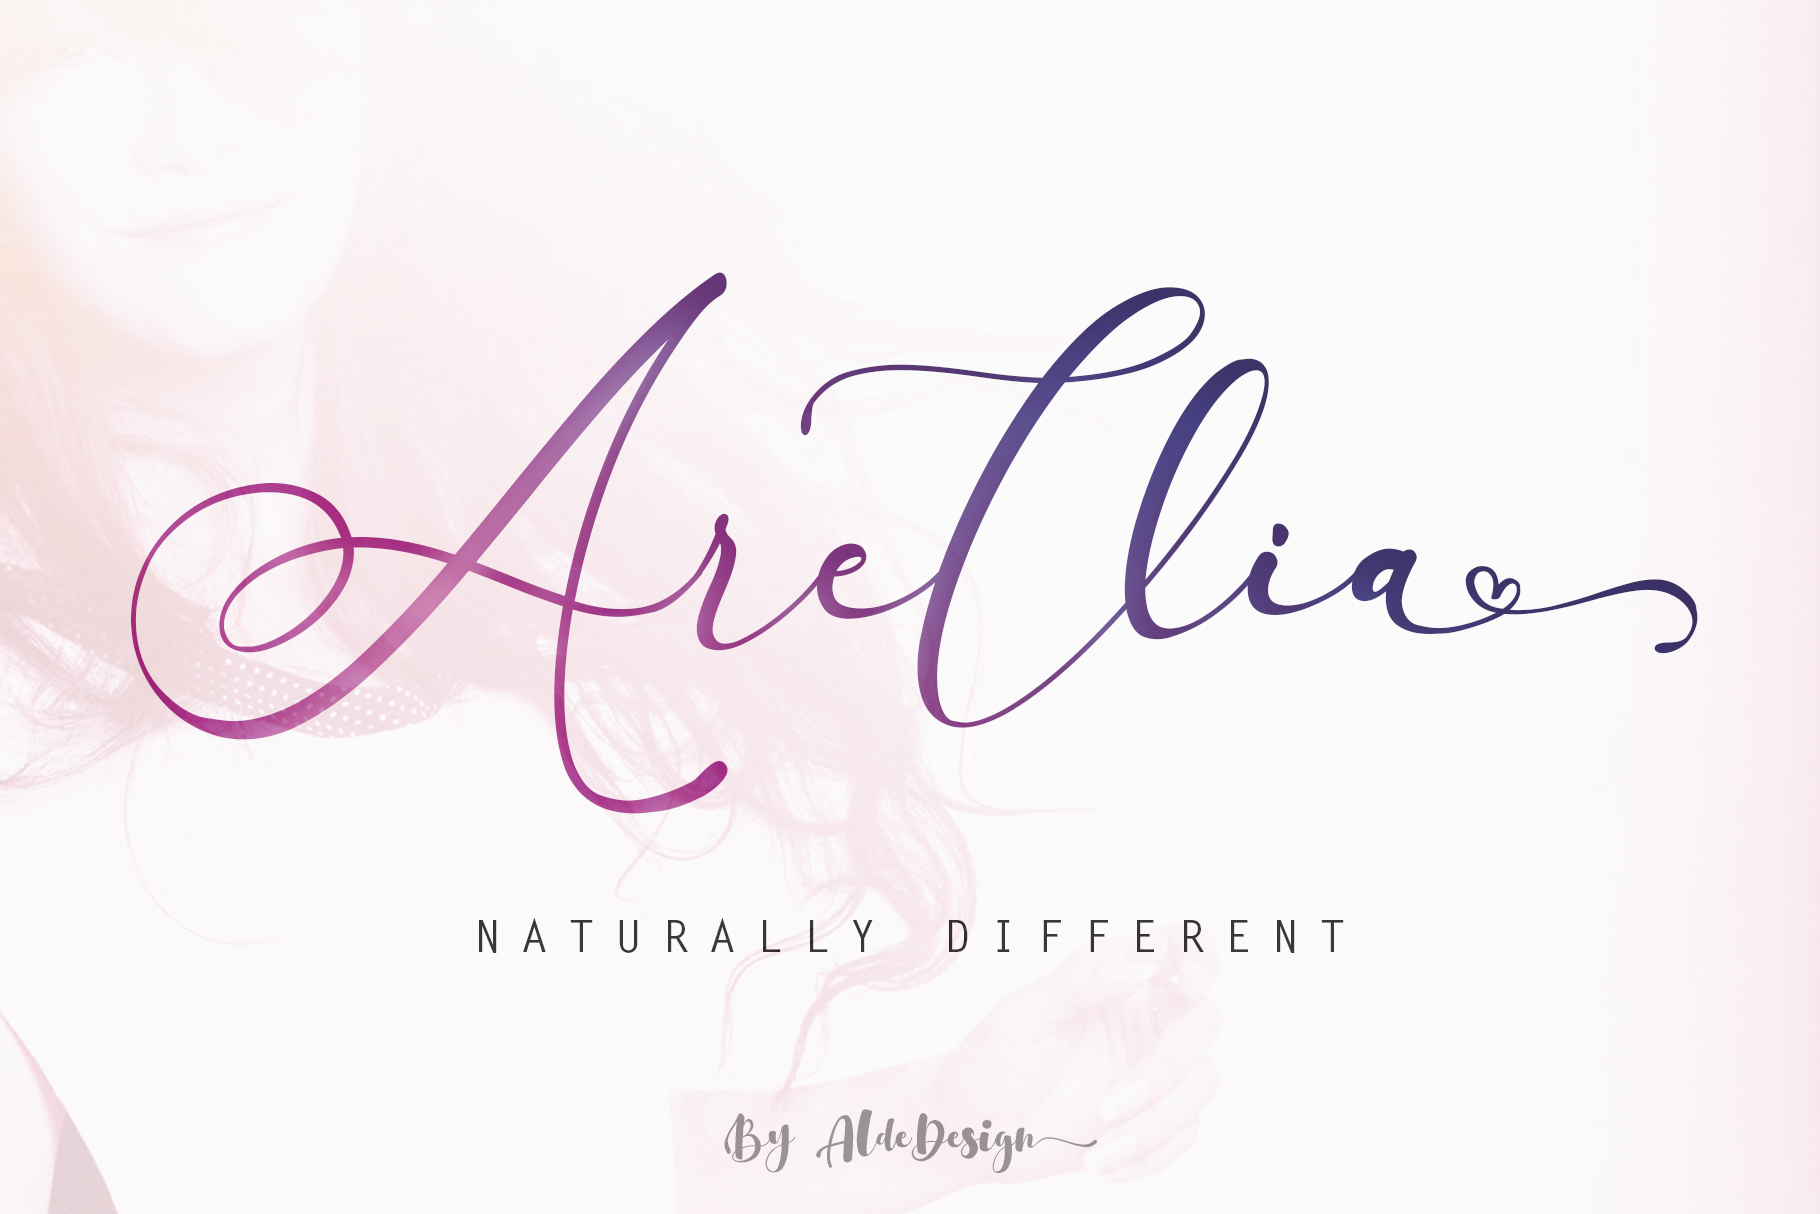 arelia - gorgeous fonts